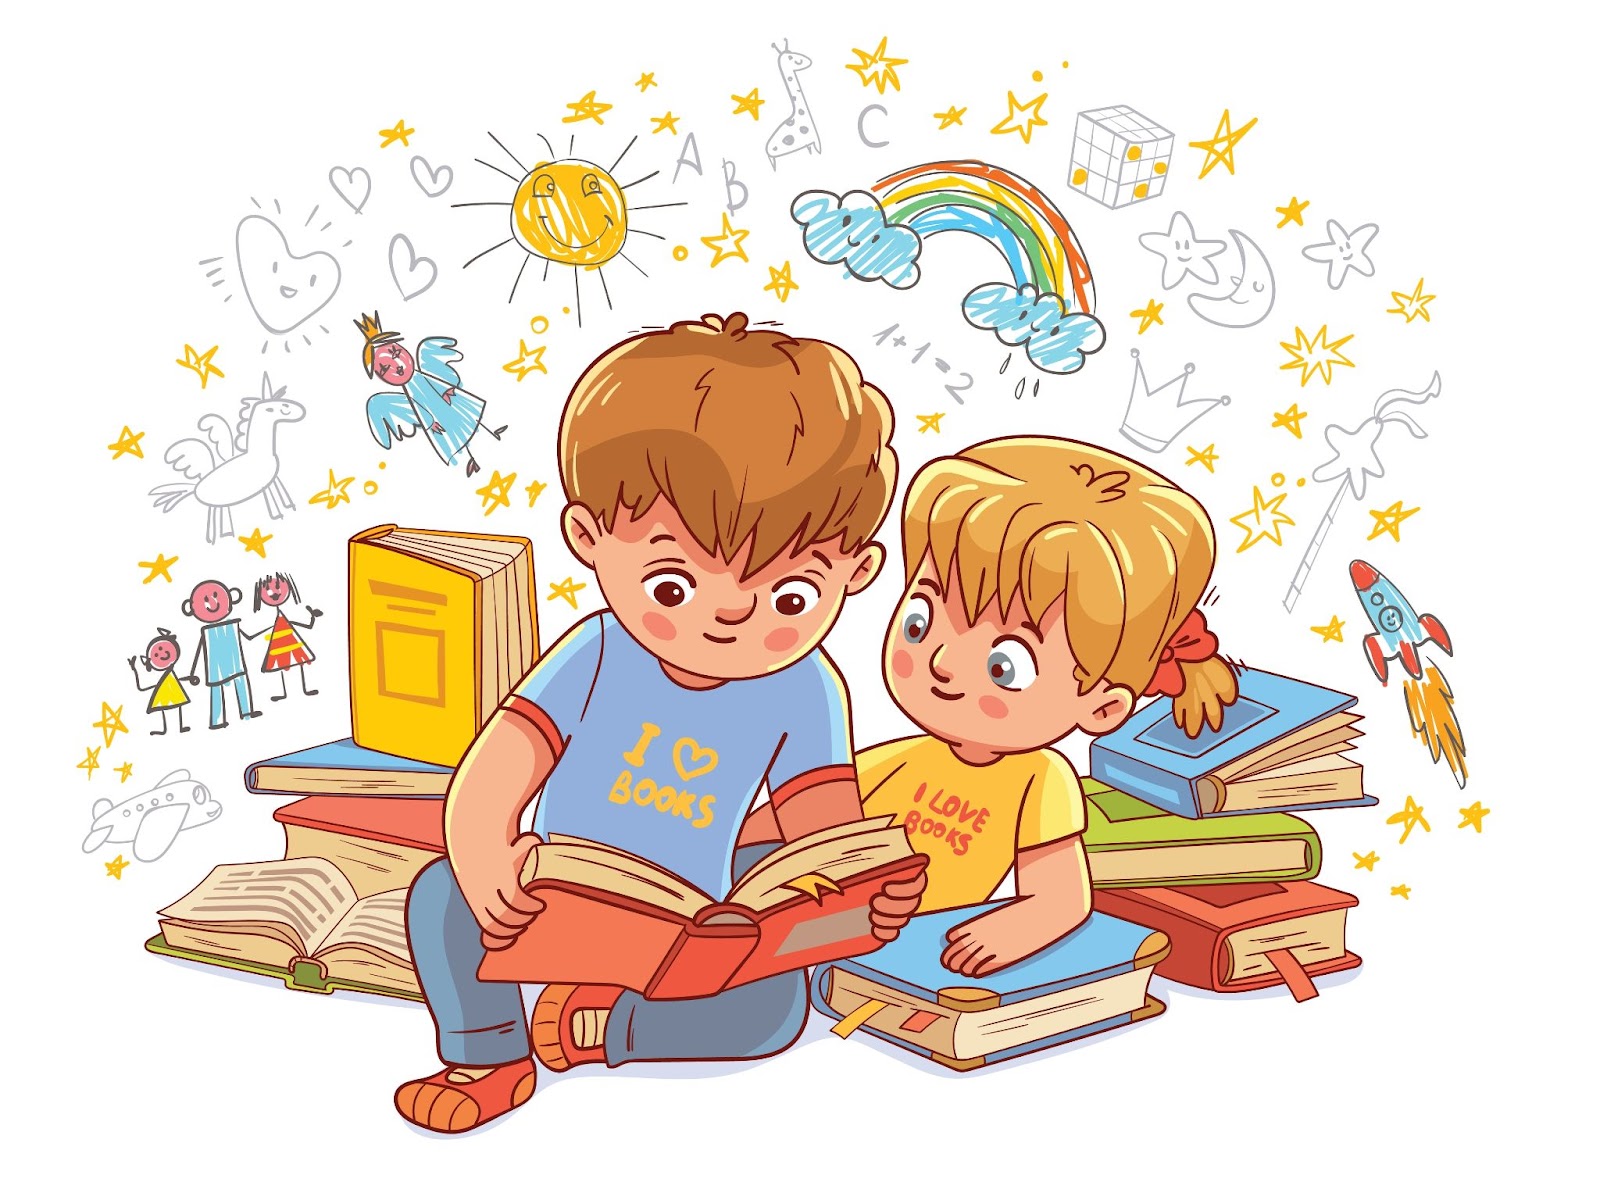 Băiat și fată citind basme împreună. Caractere colorate de desene animate. Ilustrație vectorială amuzantă.